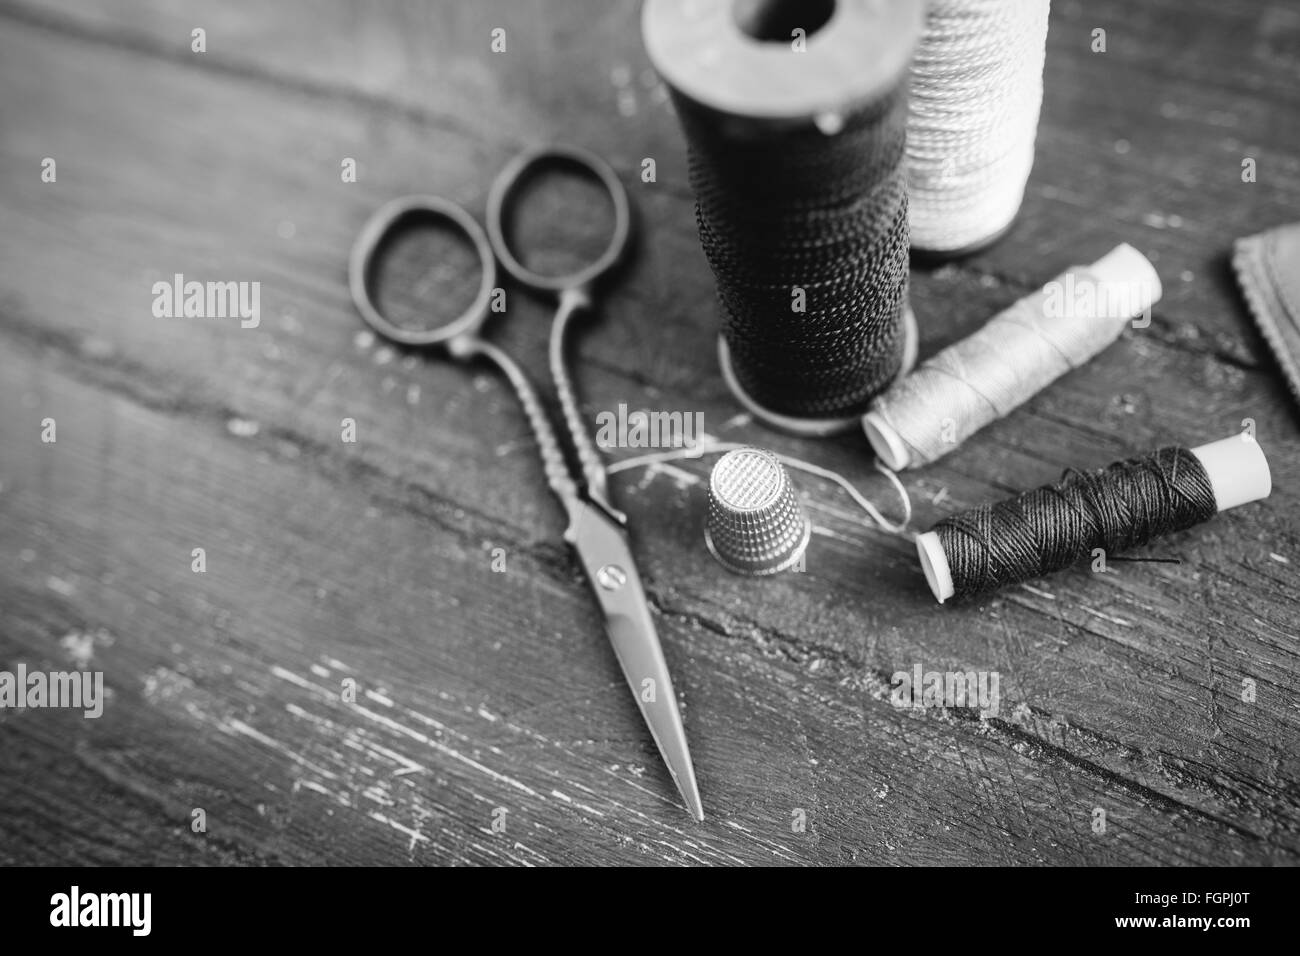 Nähen Zubehör: Spulen Faden, Schere, Nadel, Fingerhut auf Holztisch. Schwarz / weiß Foto. Schneidern und Nähen Konzept. Stockfoto